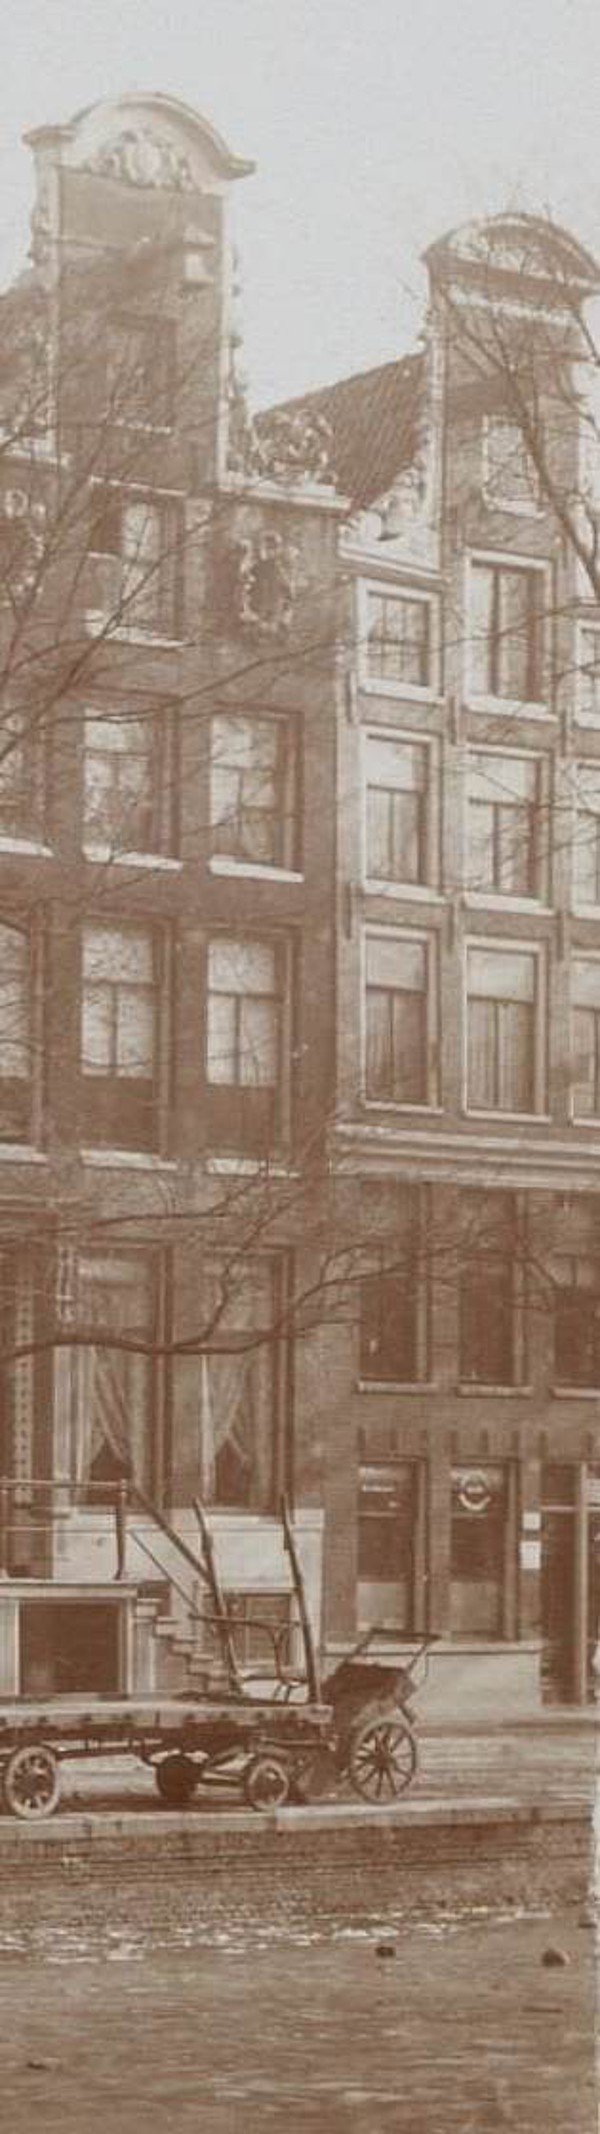 Herengracht 141.1883 Hertz